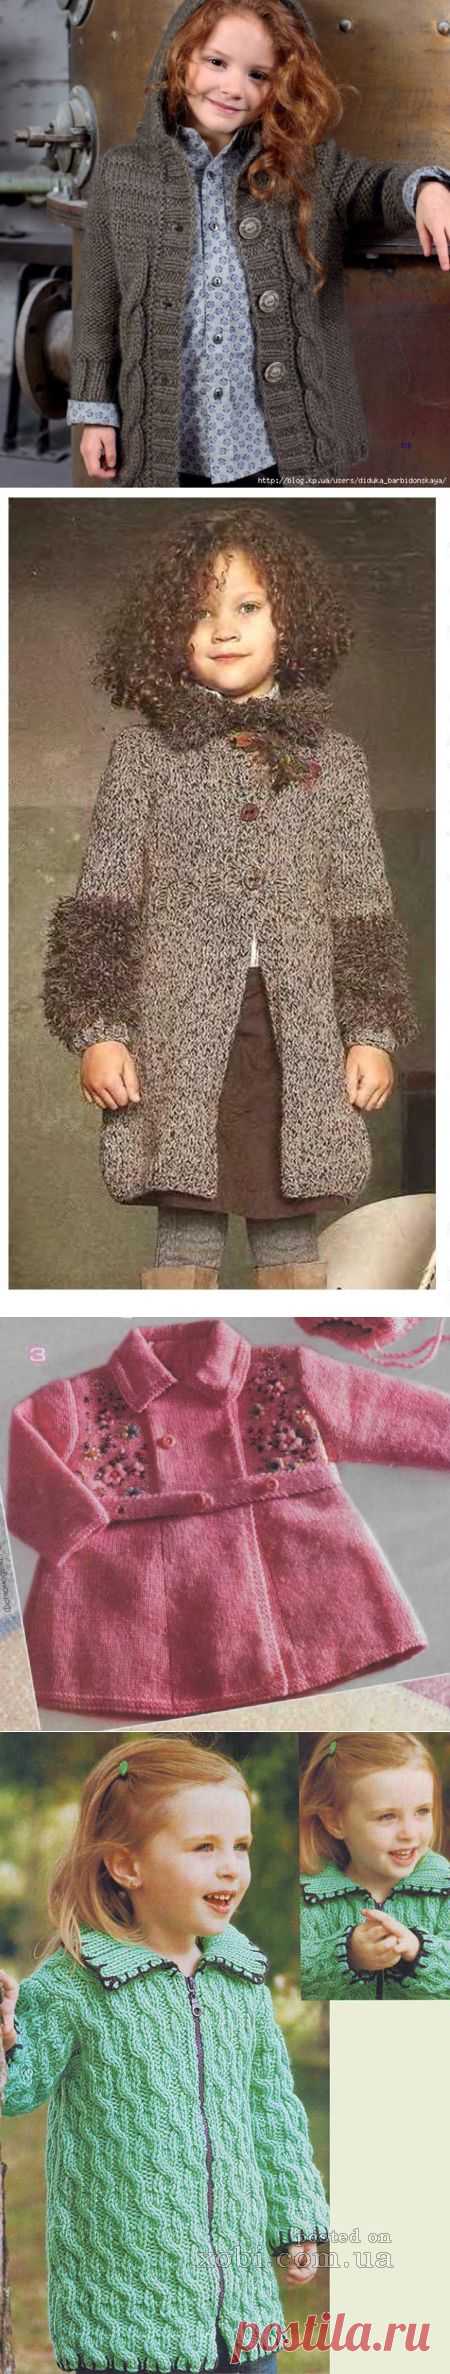 Вязаное пальто для девочки.